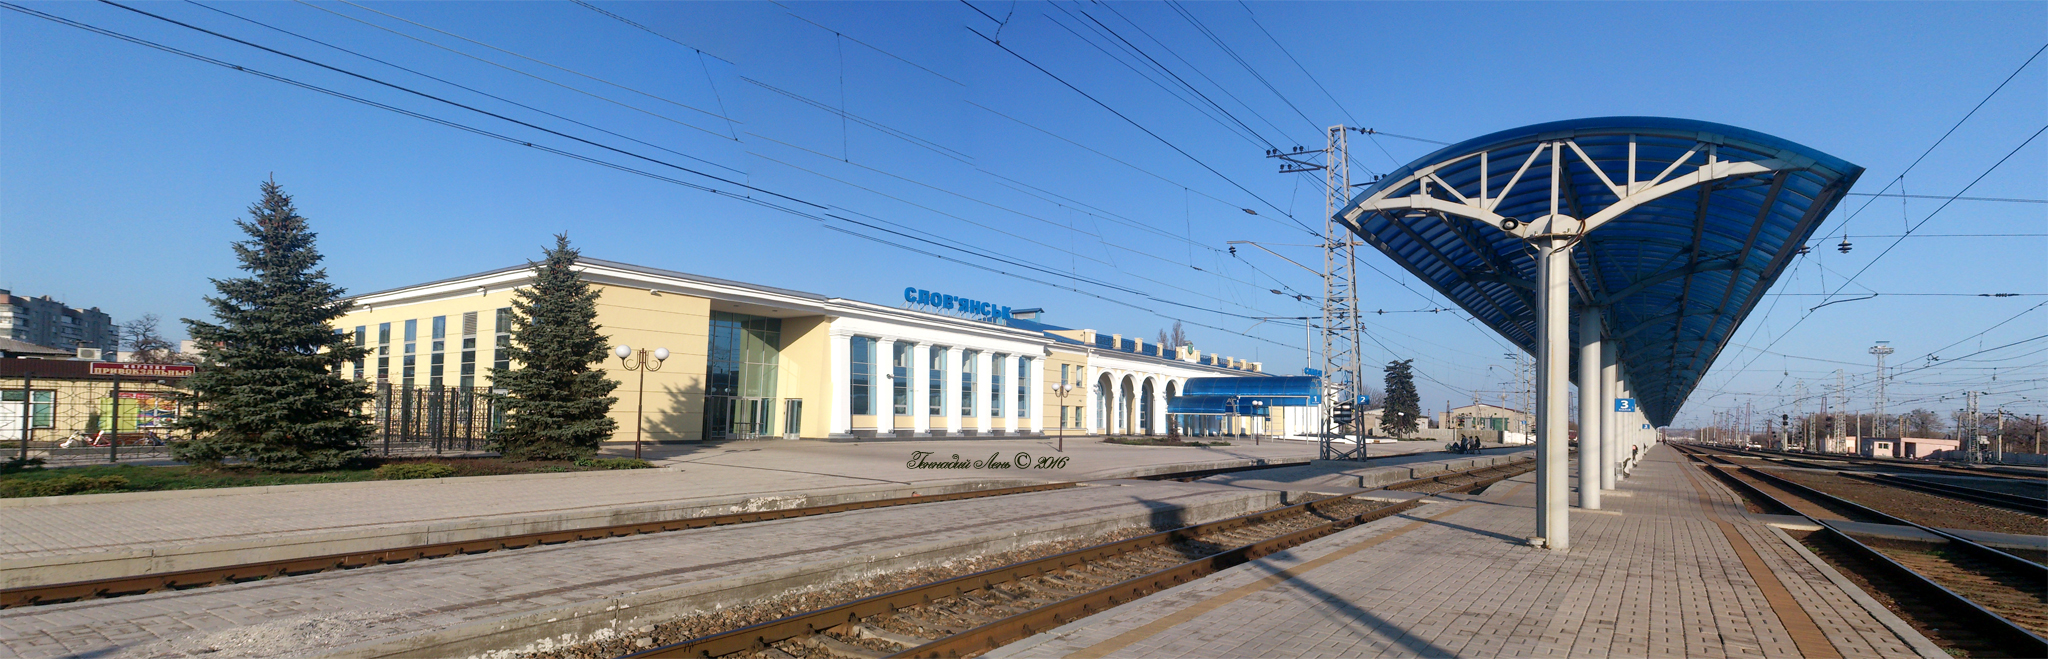 южно сахалинск жд вокзал